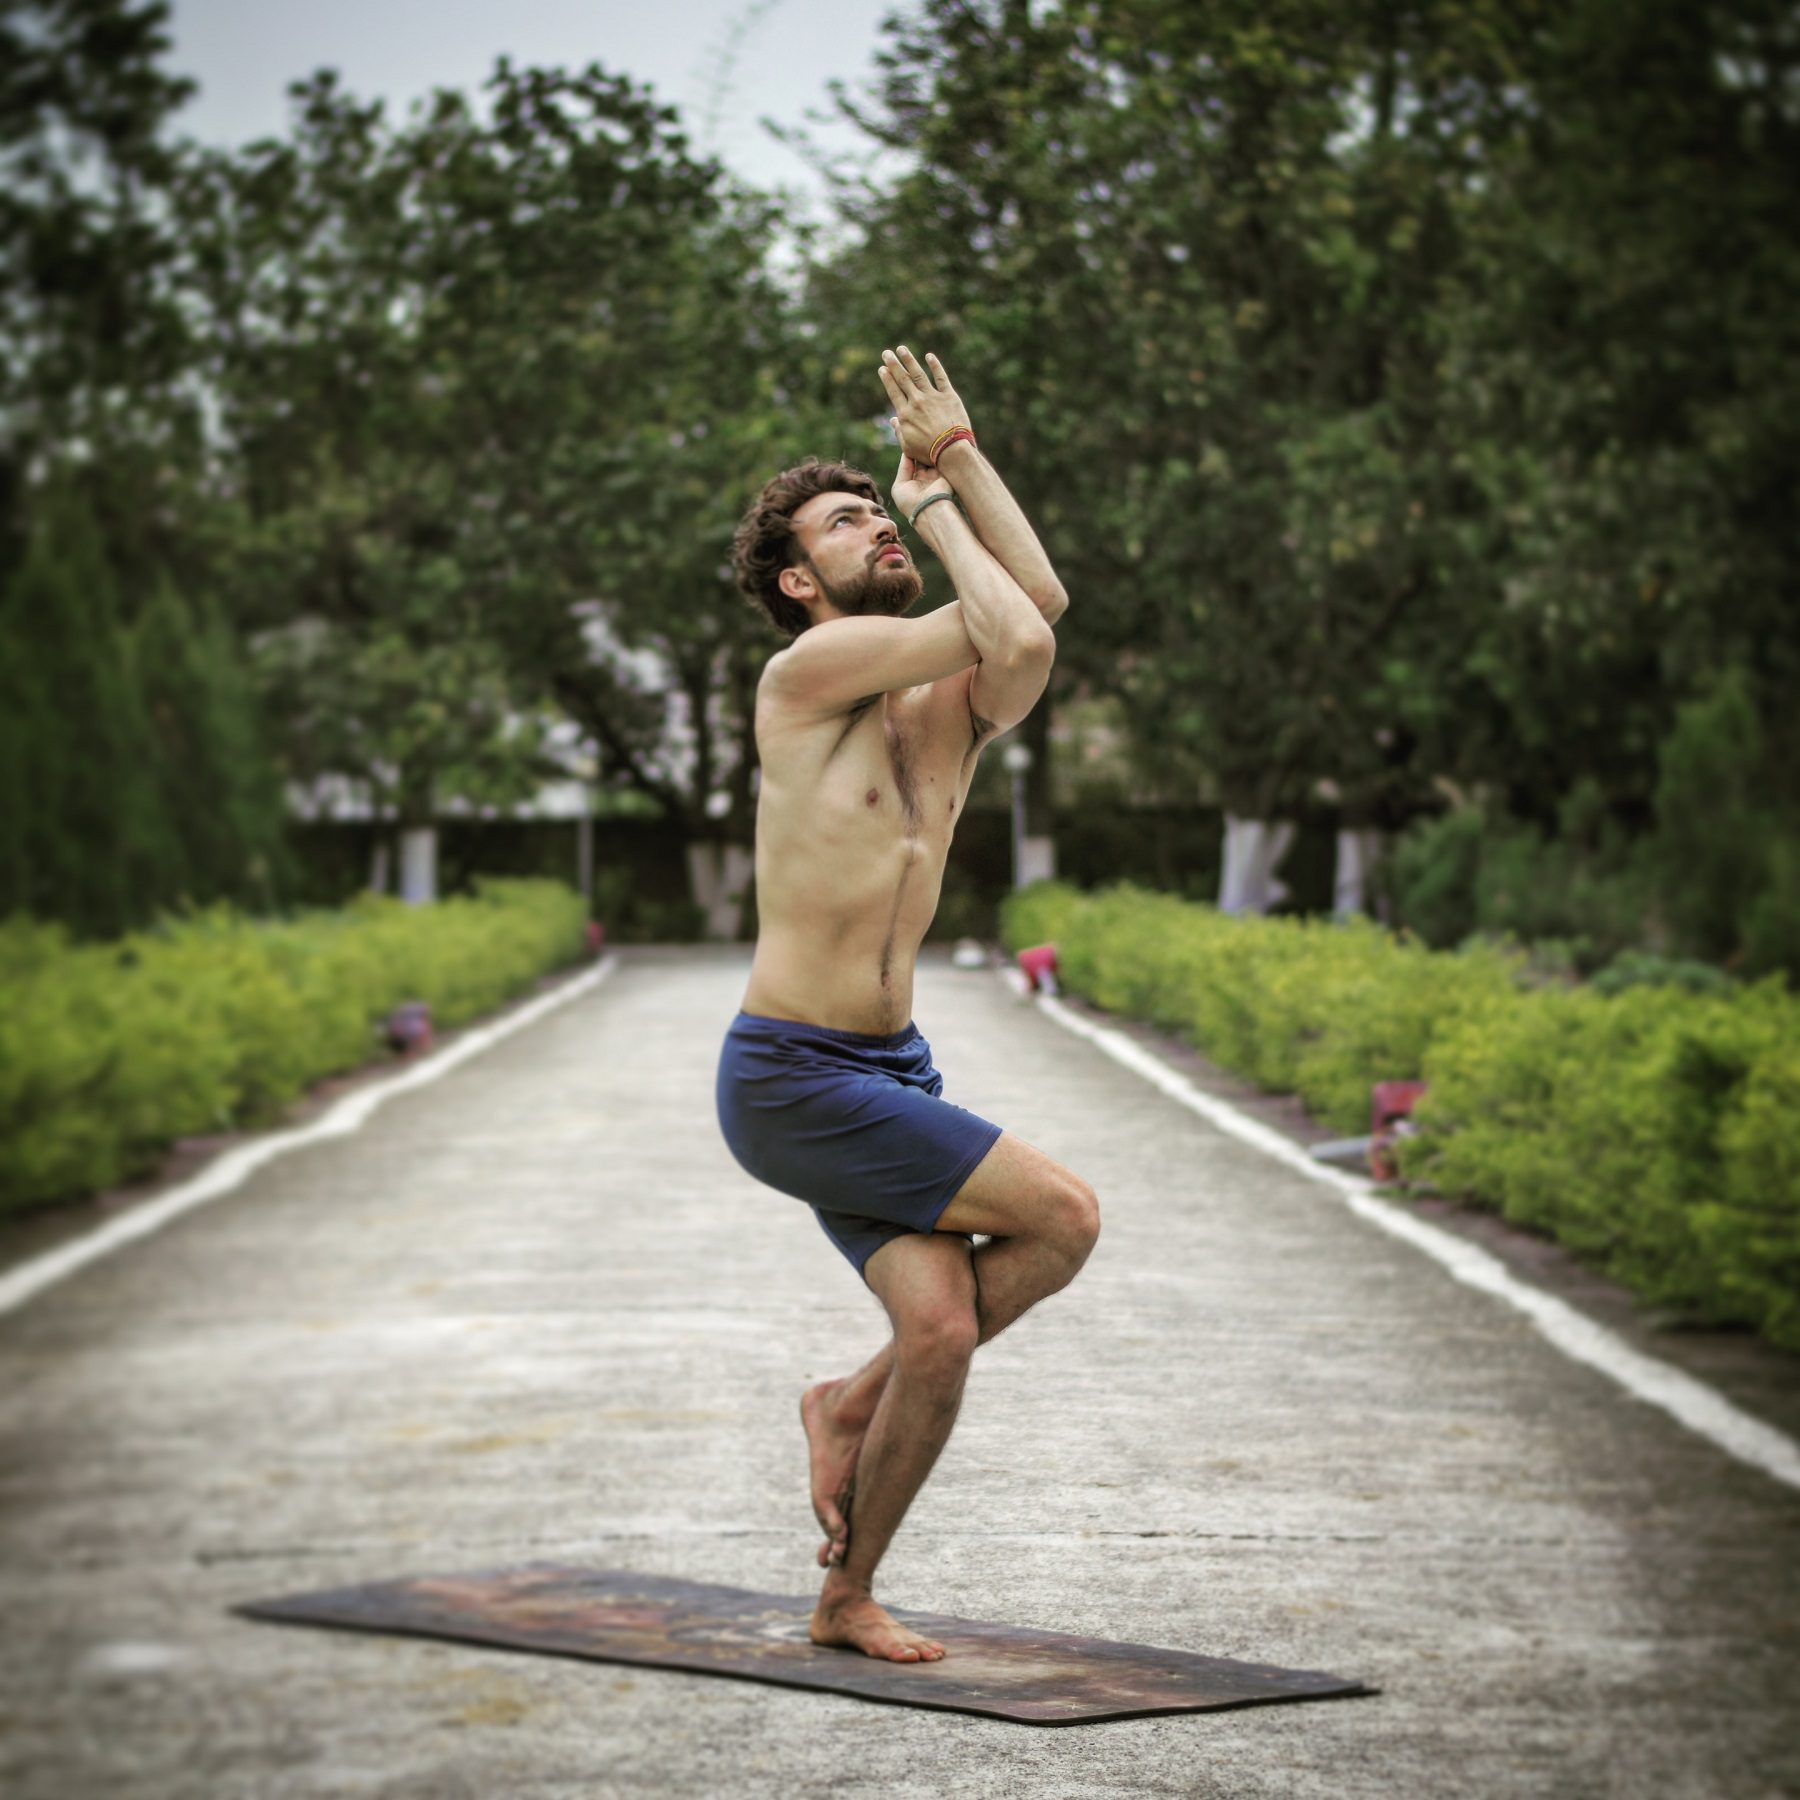 A Man do Yoga asana